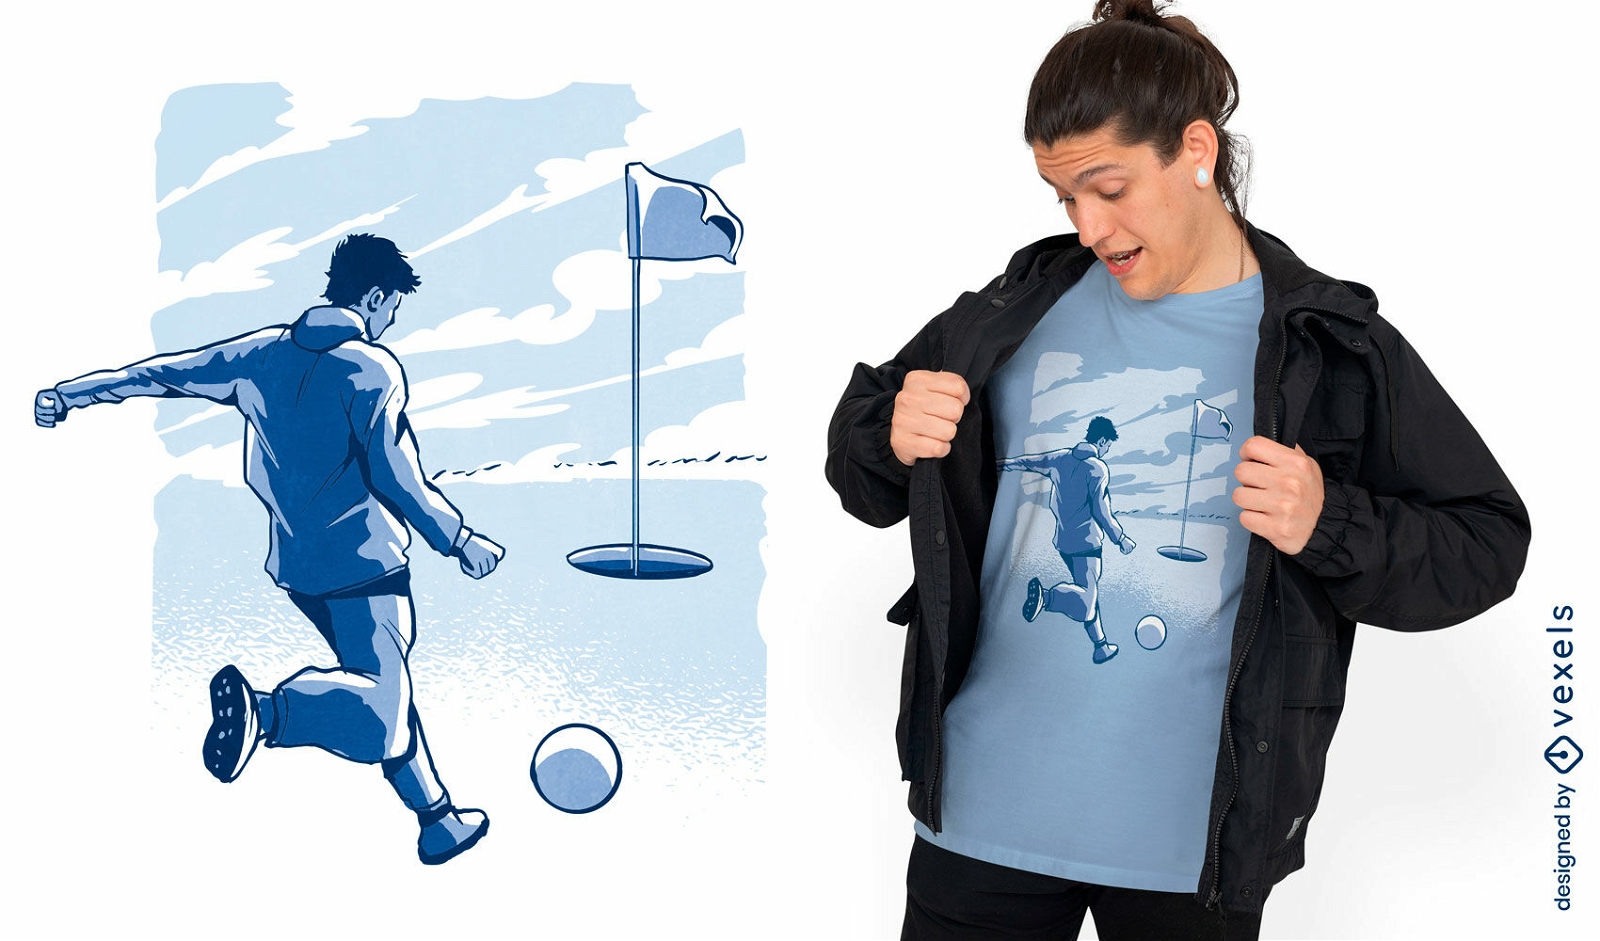 Footgolf comic t-shirt design